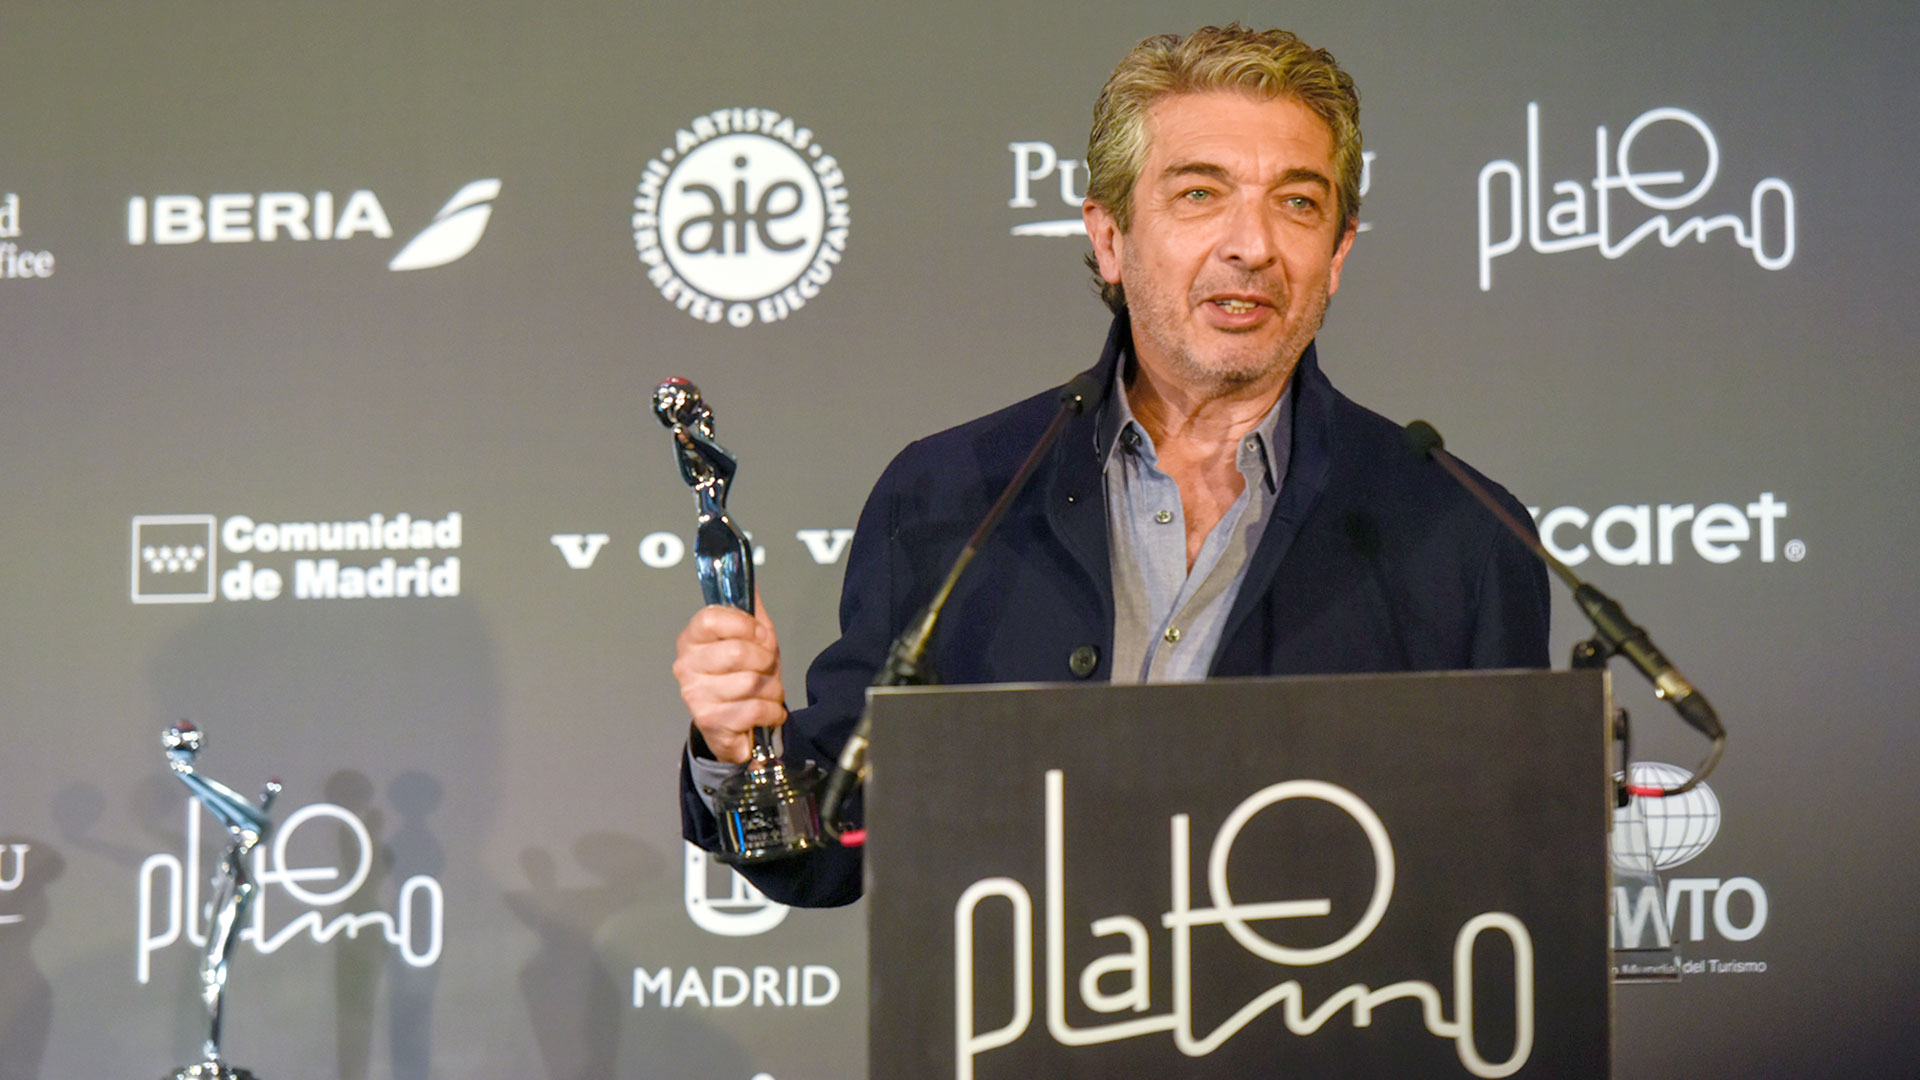 Ricardo Darín y Argentina, 1985 se impusieron en los Premios Platino imagen-1